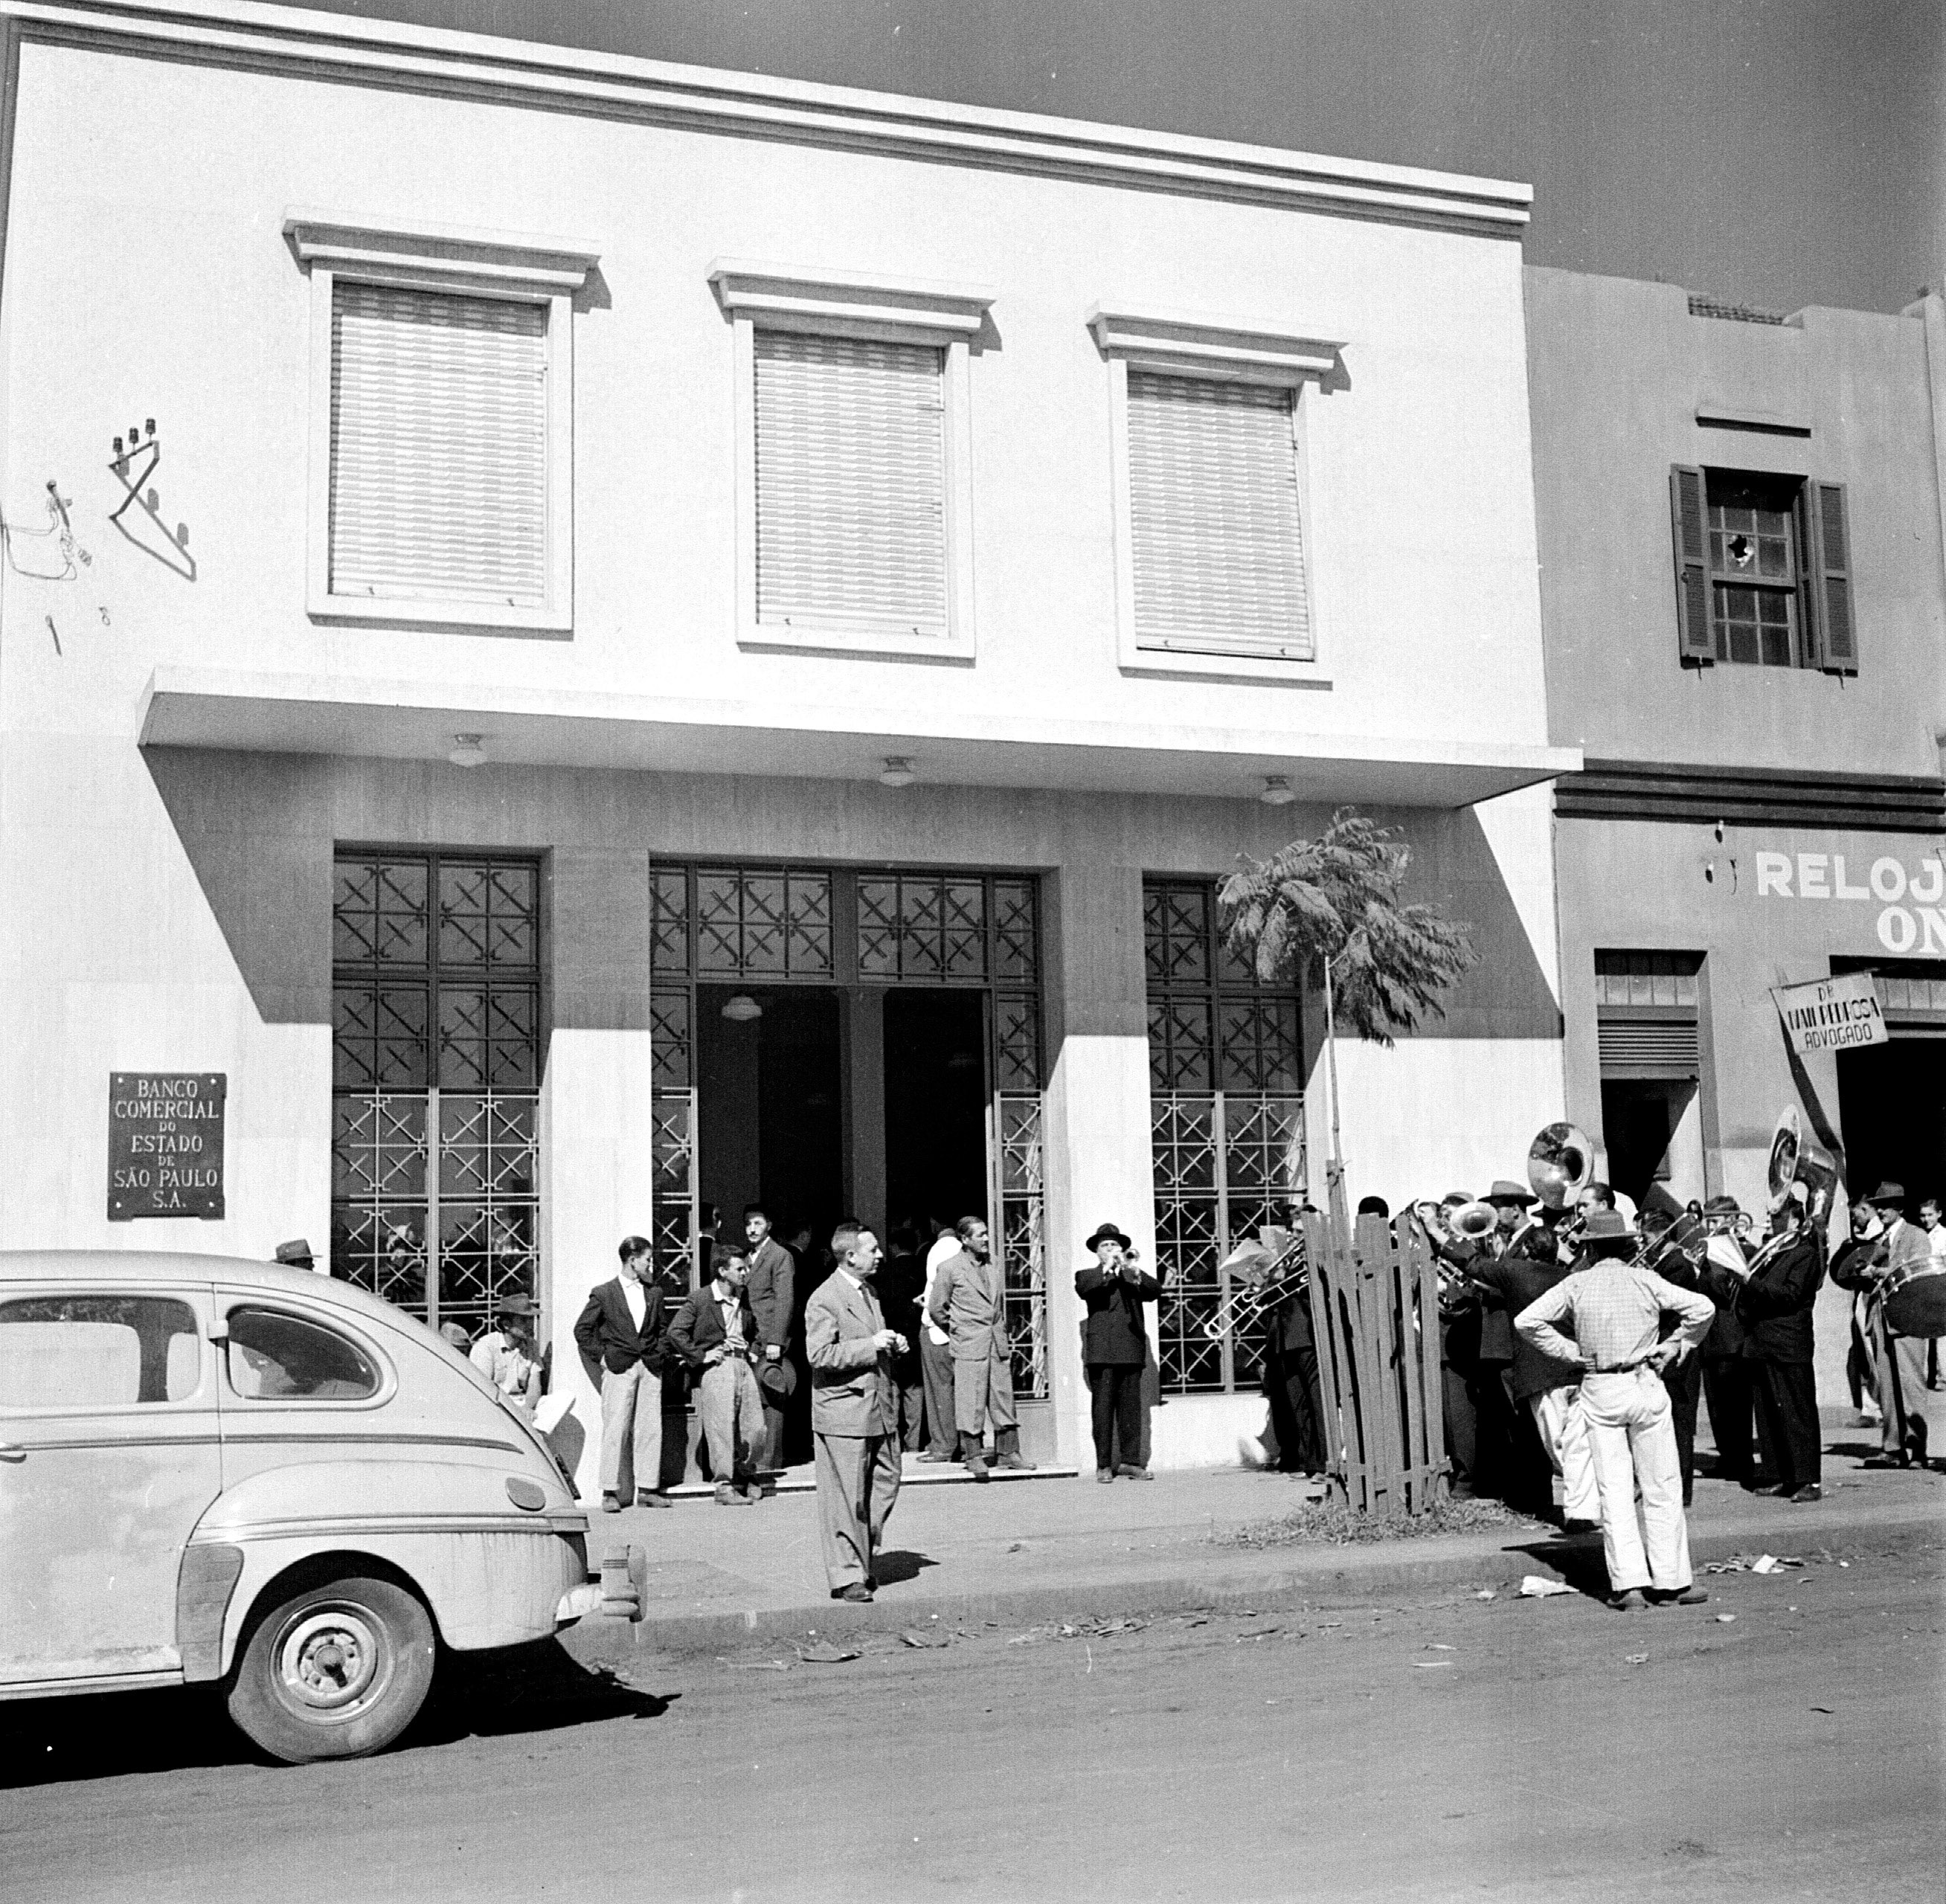 Banda na inauguração do Banco Comercial do Estado de São Paulo - Década de 1950